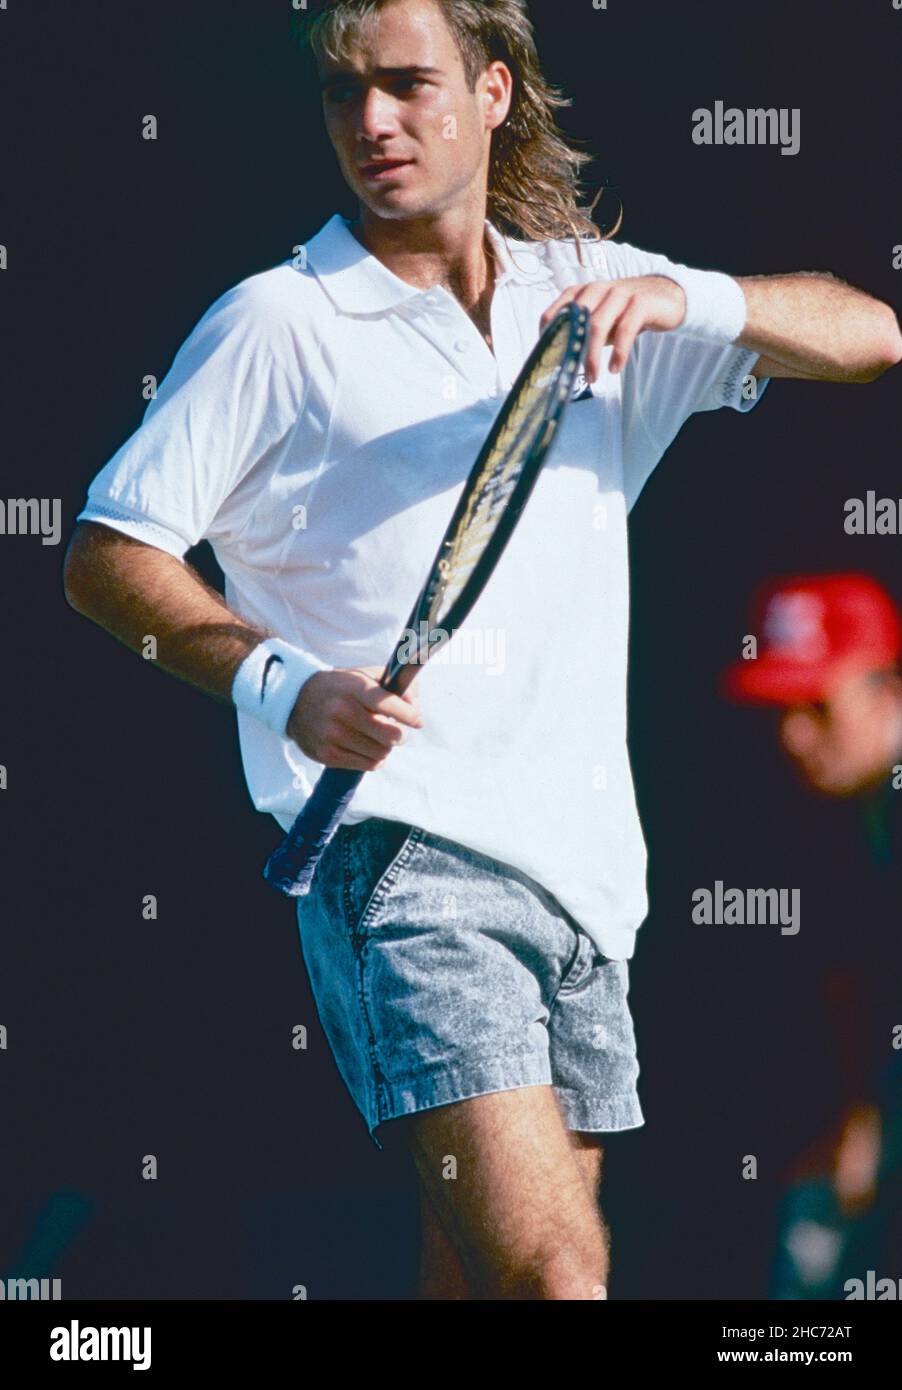 El tenista americano Andre Agassi, 1987 Foto de stock